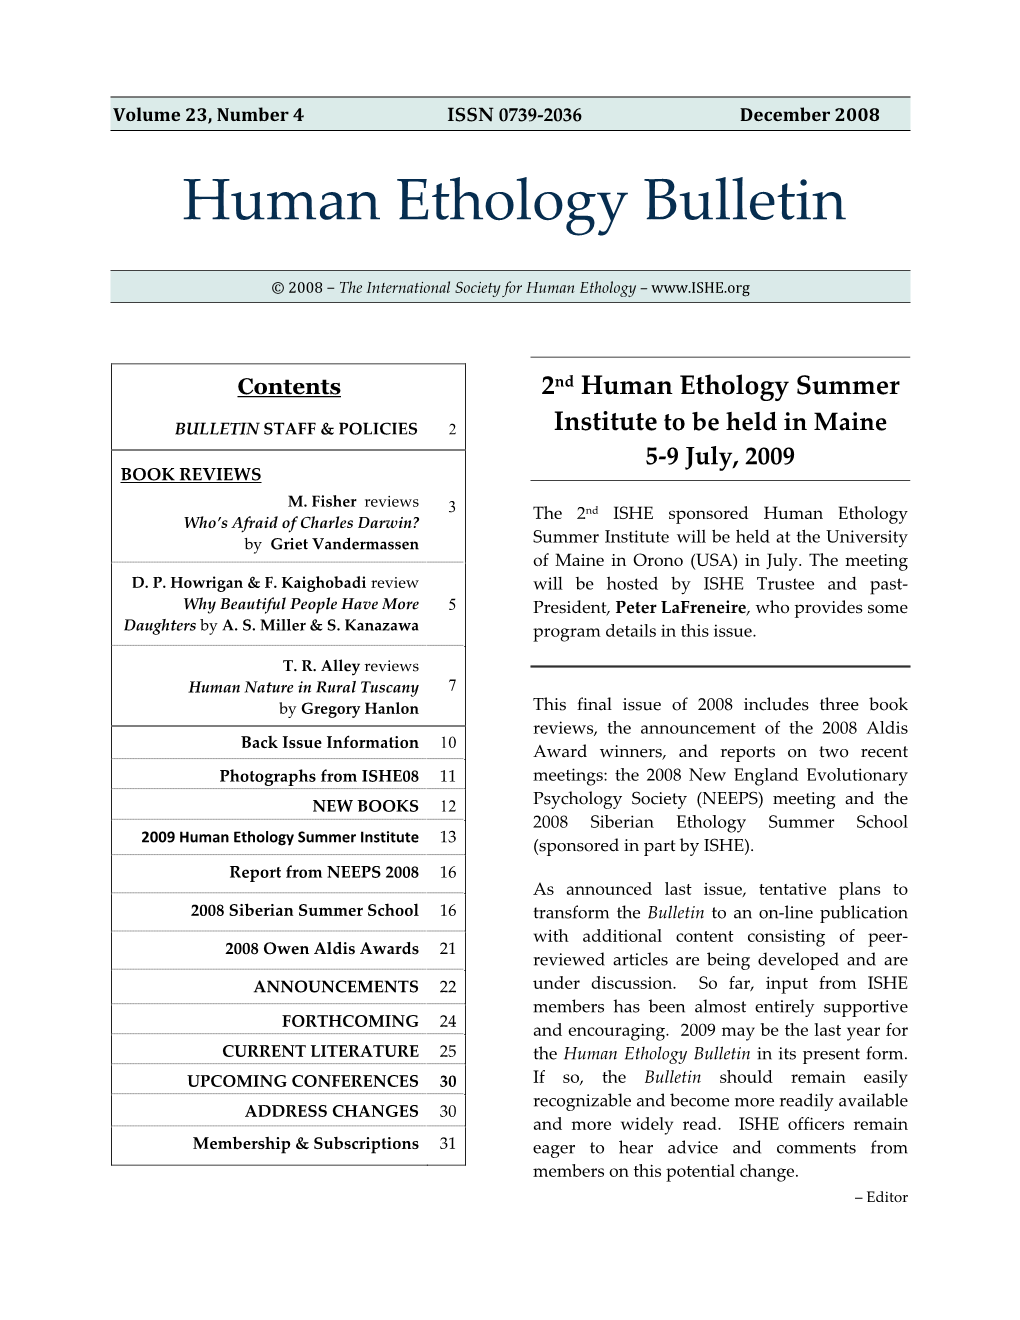 Human Ethology Bulletin, 2008